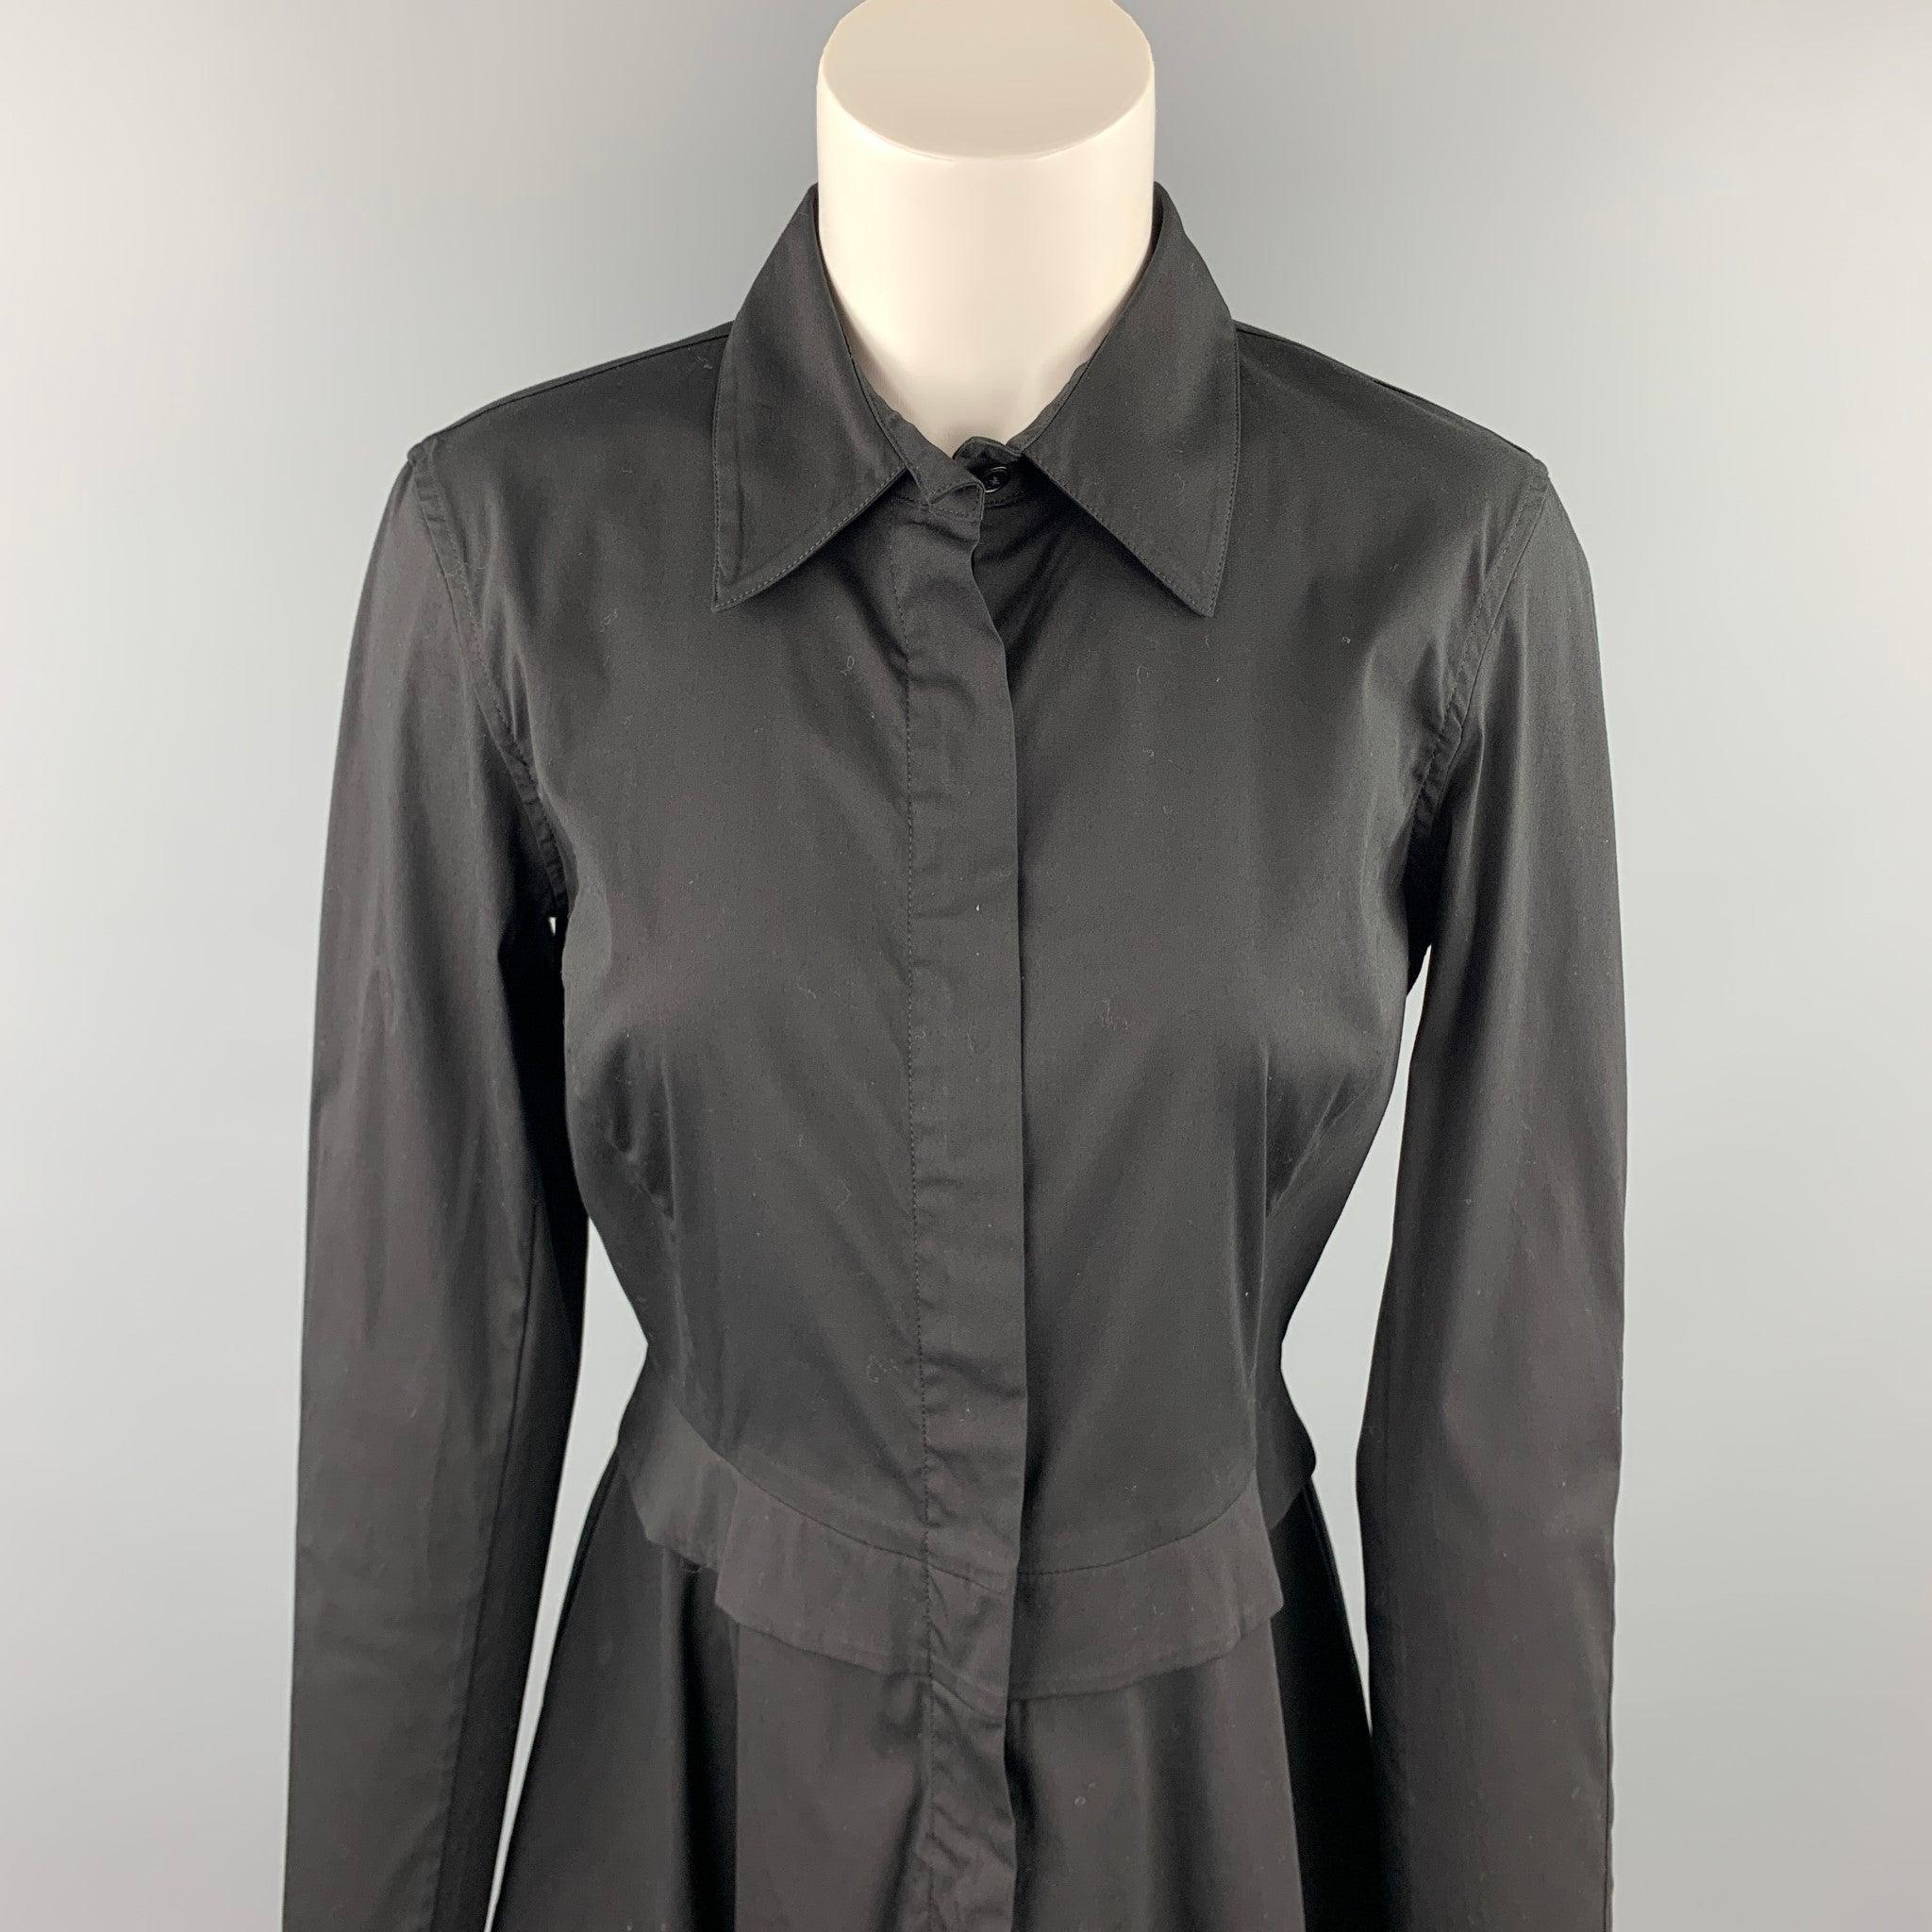 La robe chemise DONNA KARAN, en coton mélangé noir, présente des manches longues, un col montant, une mini-jupe trapèze et une fermeture à glissière sur le devant.Excellent
Etat d'occasion. 

Marqué :   US 8 

Mesures : 
 
Épaule : 16 pouces